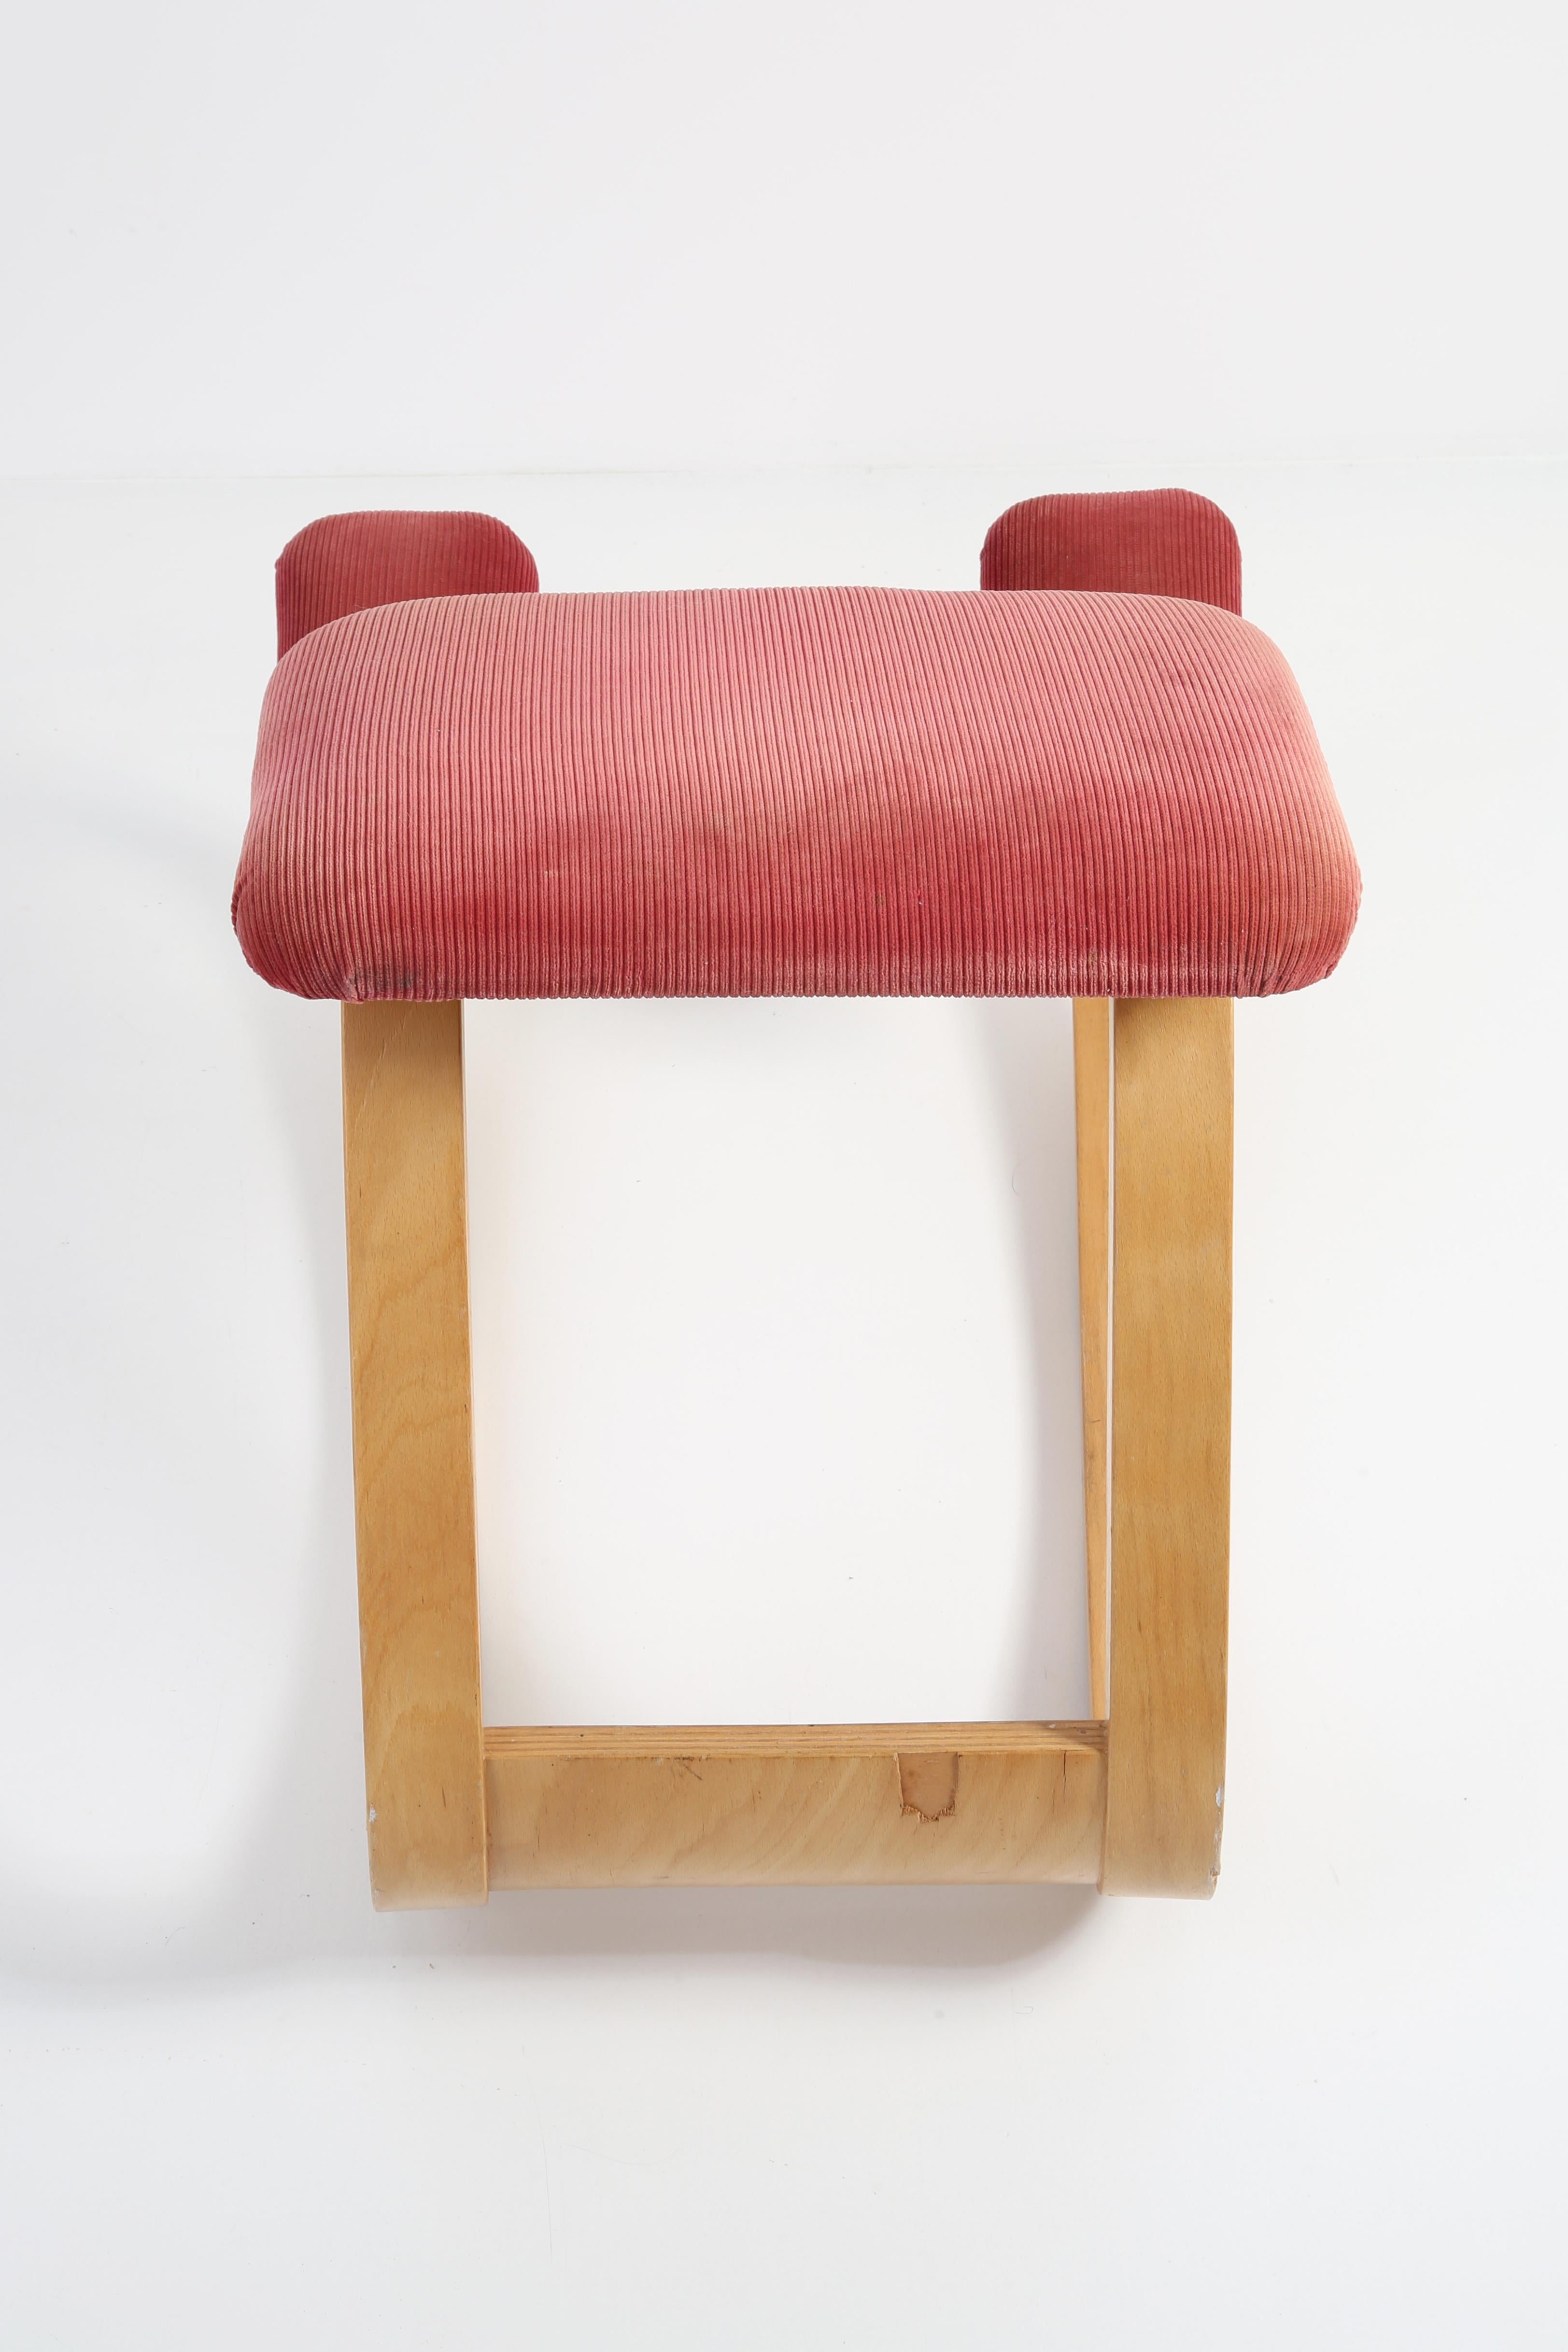 Mid-Century Modern Variable Balans Peter Opsvik Kneeling Ergonomic Chair, Varier, 1970s, Norway